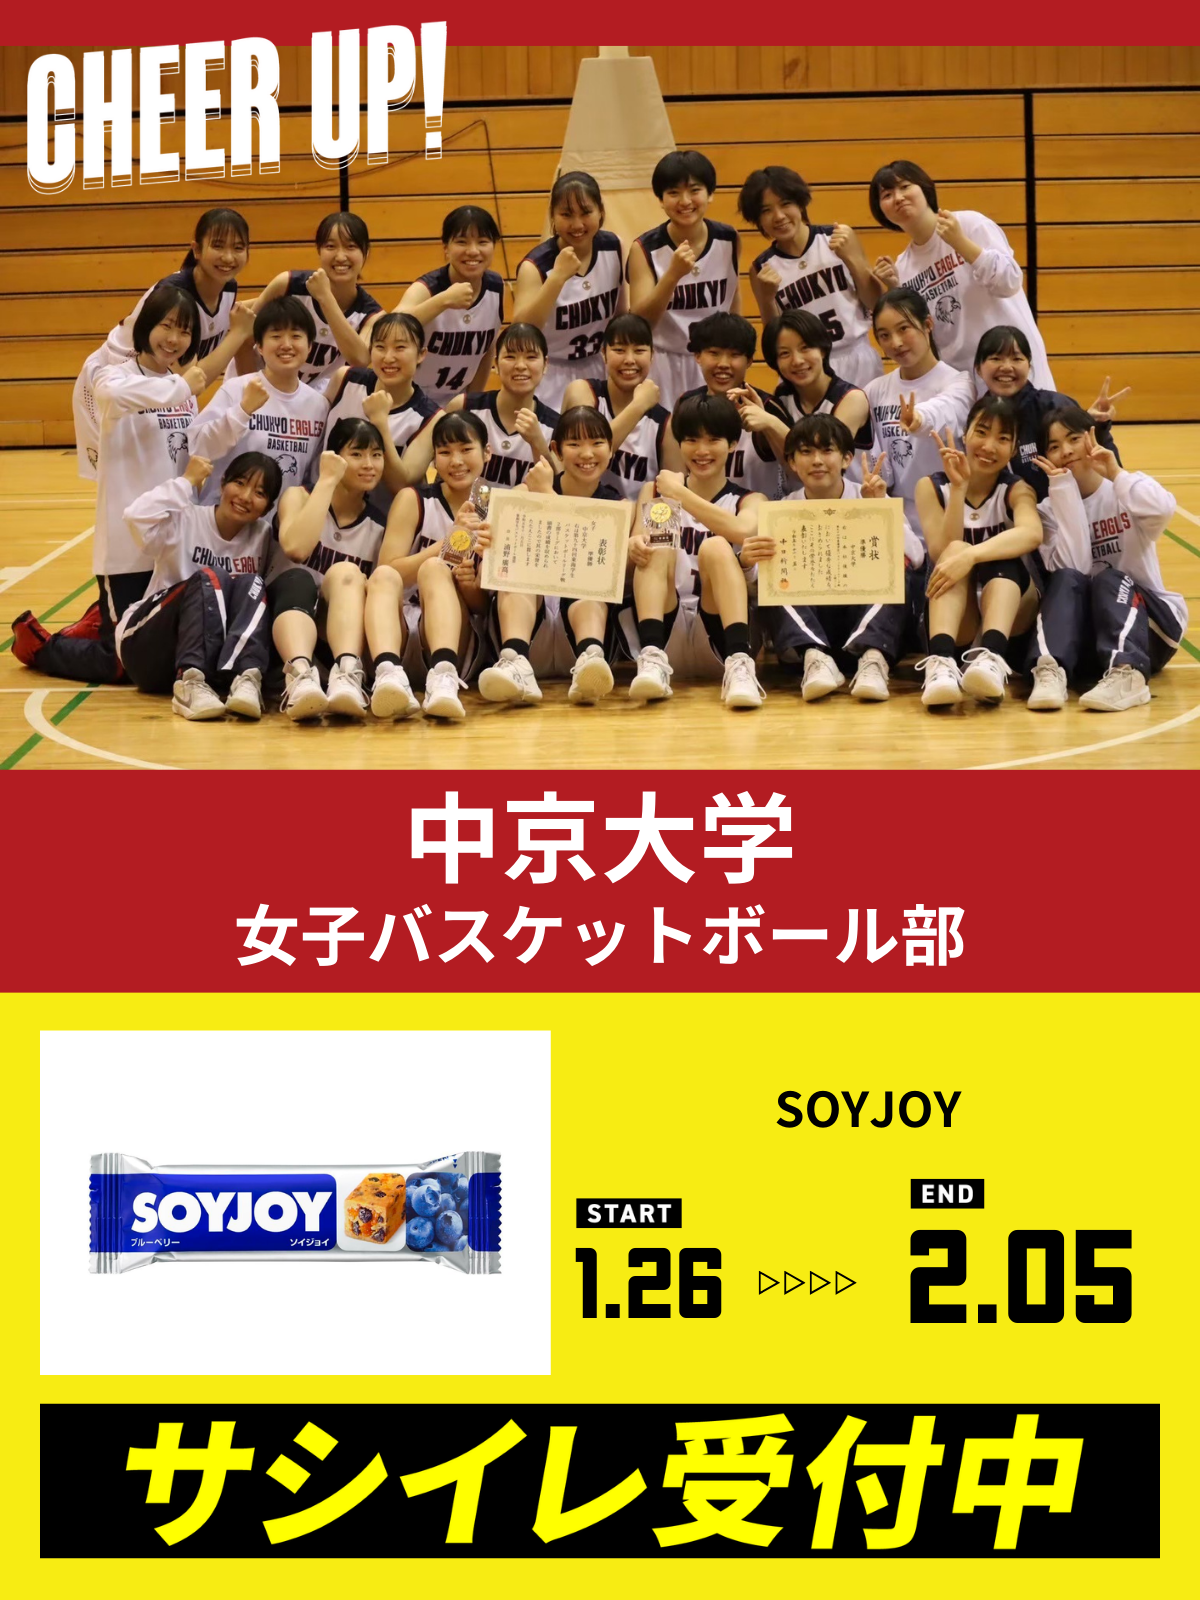 CHEER UP! for 中京大学　女子バスケットボール部vol.2